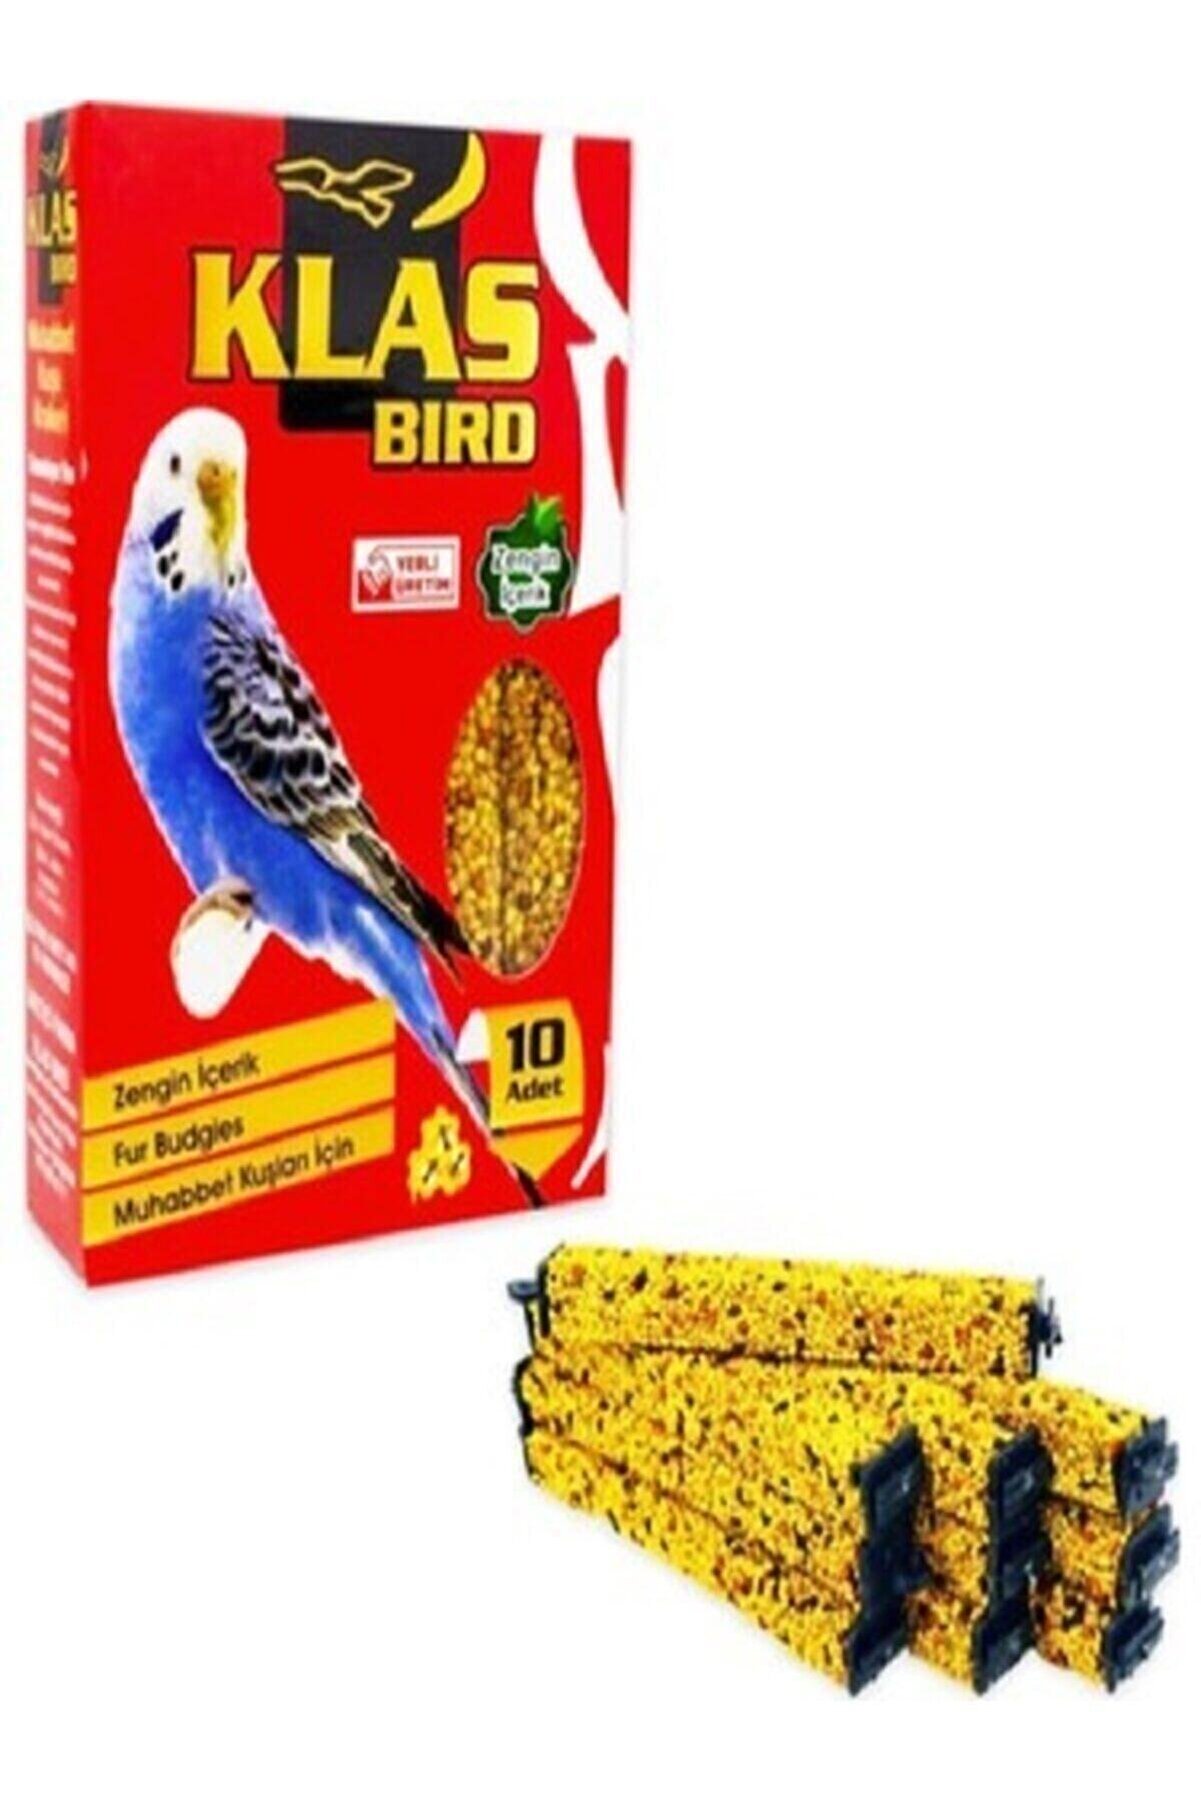 Klas Bird Muhabbet Kuşu Ballı Kraker - 10'lu Paket